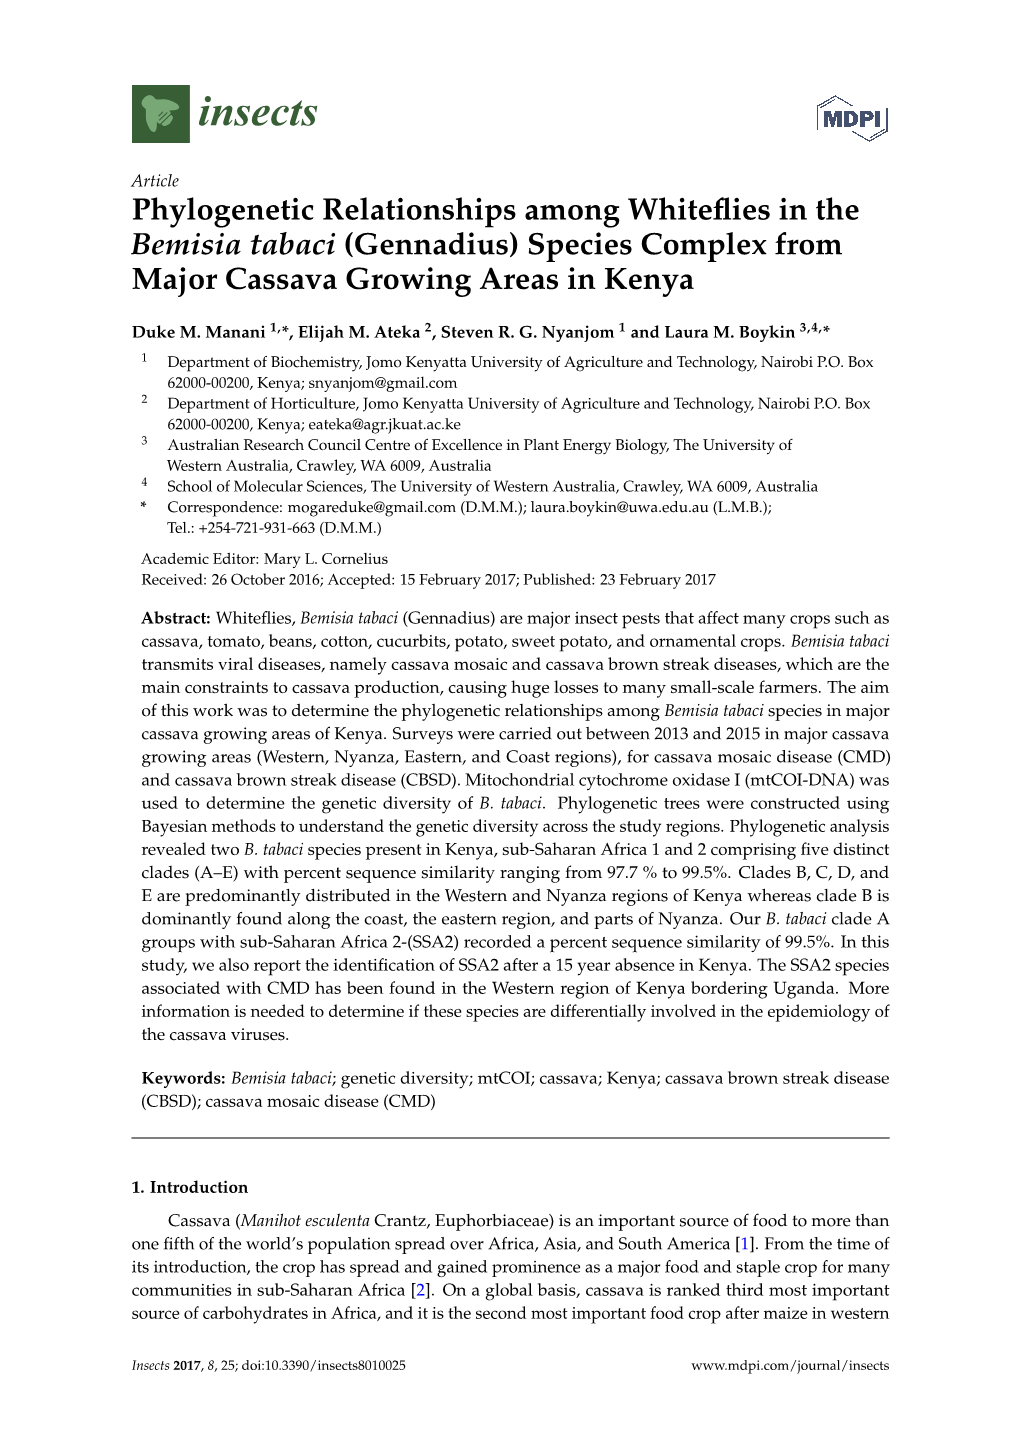 Phylogenetic Relationships Among Whiteflies in the Bemisia Tabaci